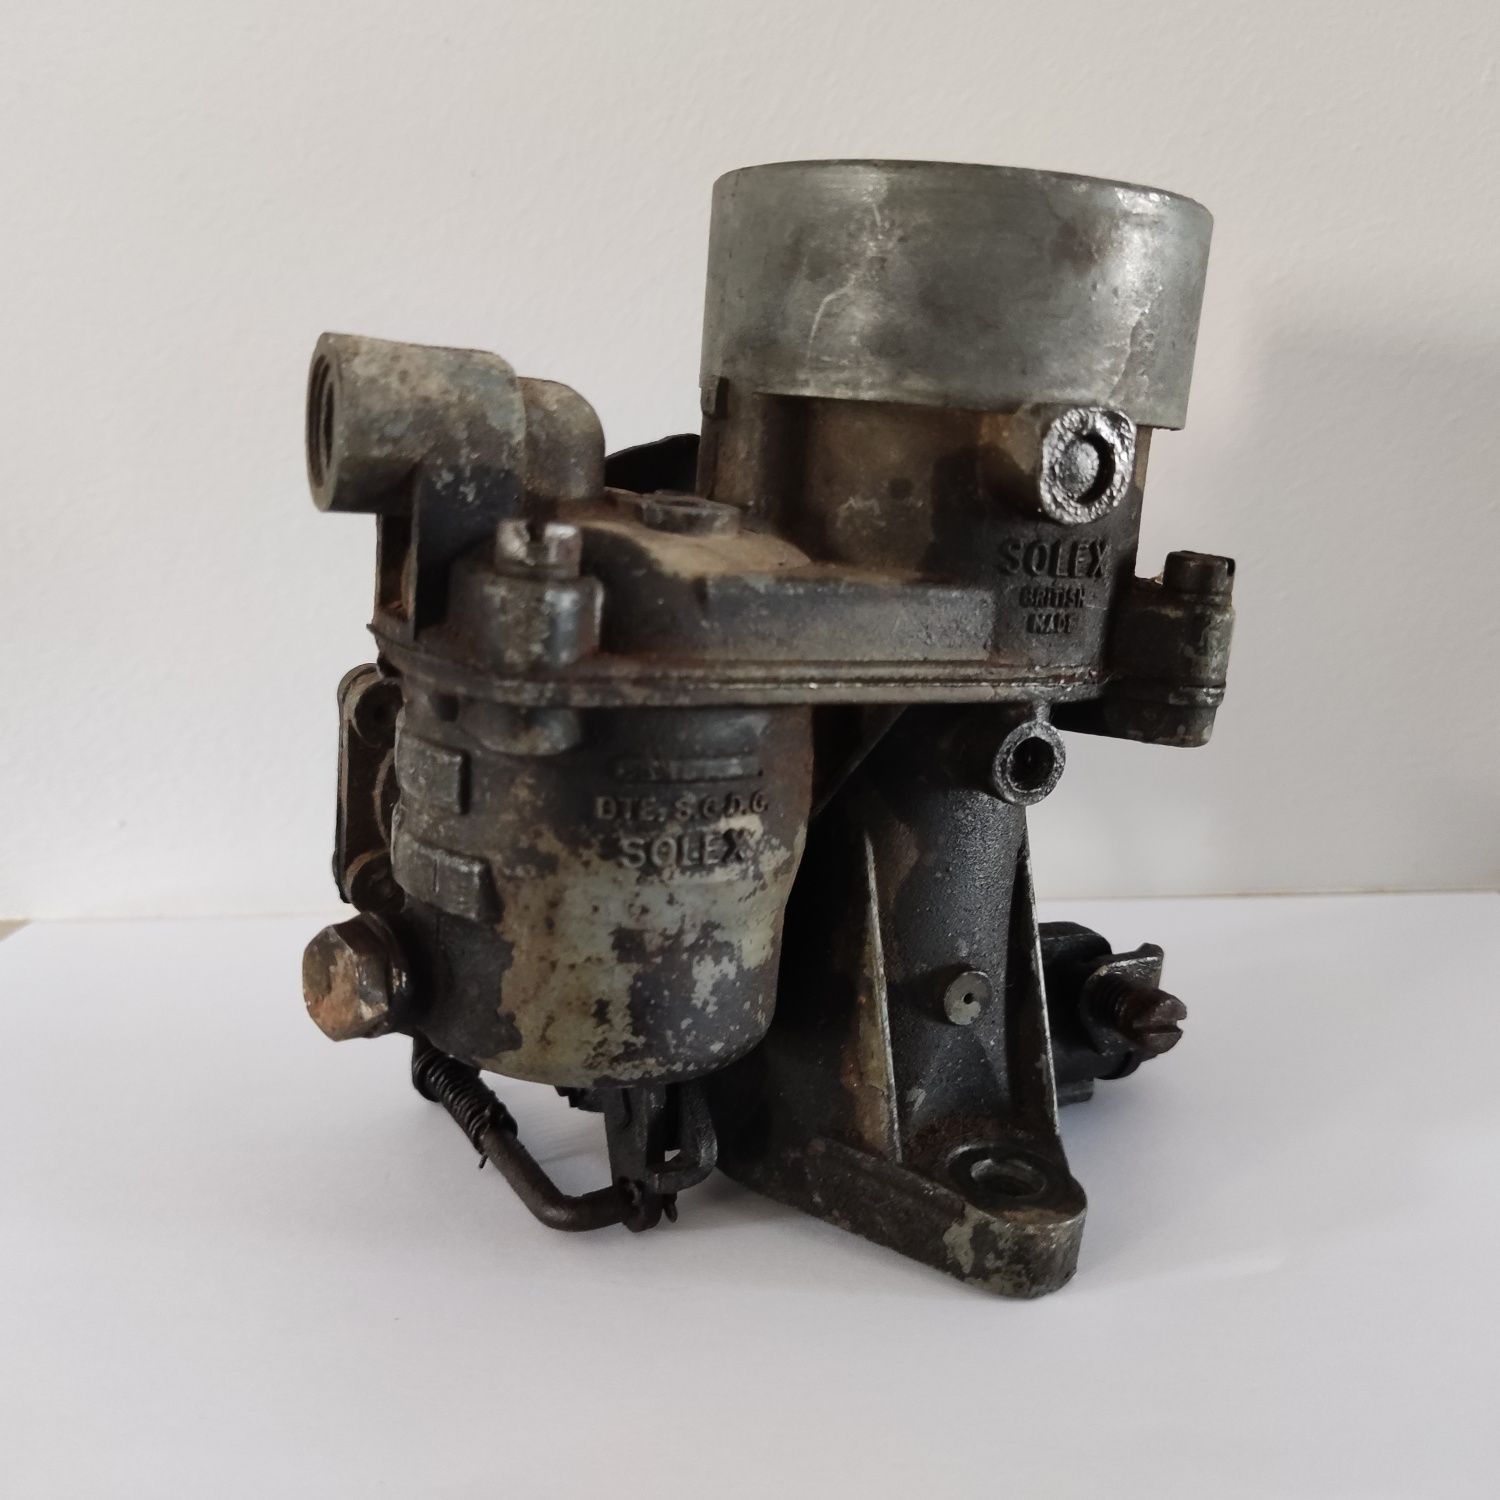 Carburador antigo Solex British Made BTE. S.G.D.G